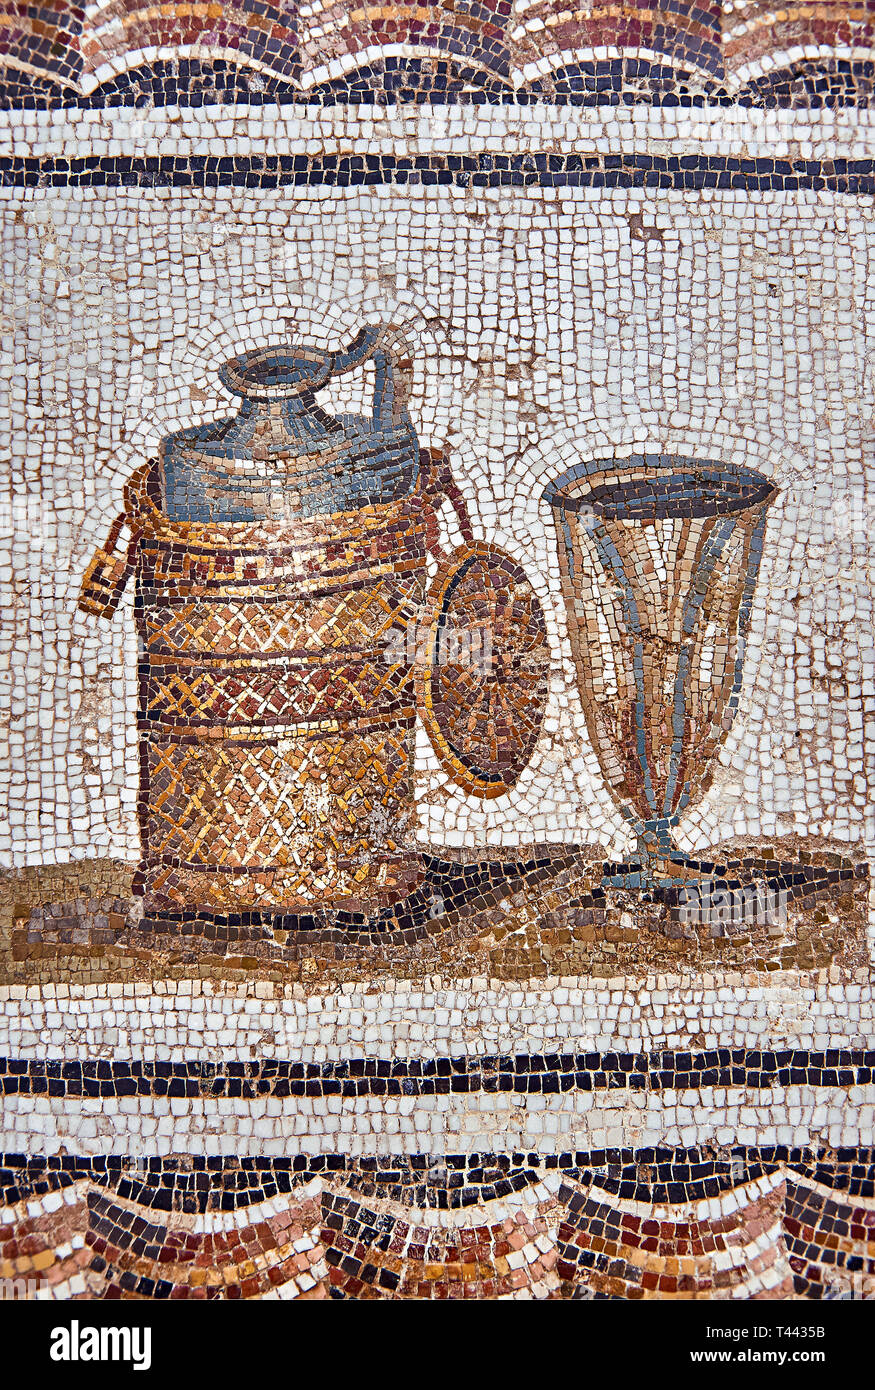 3e siècle mosaïque romaine l'inscription d'un flacon de vin & cup. Thysdrus (El Jem), Tunisie. Le Musée du Bardo, Tunis, Tunisie. Banque D'Images